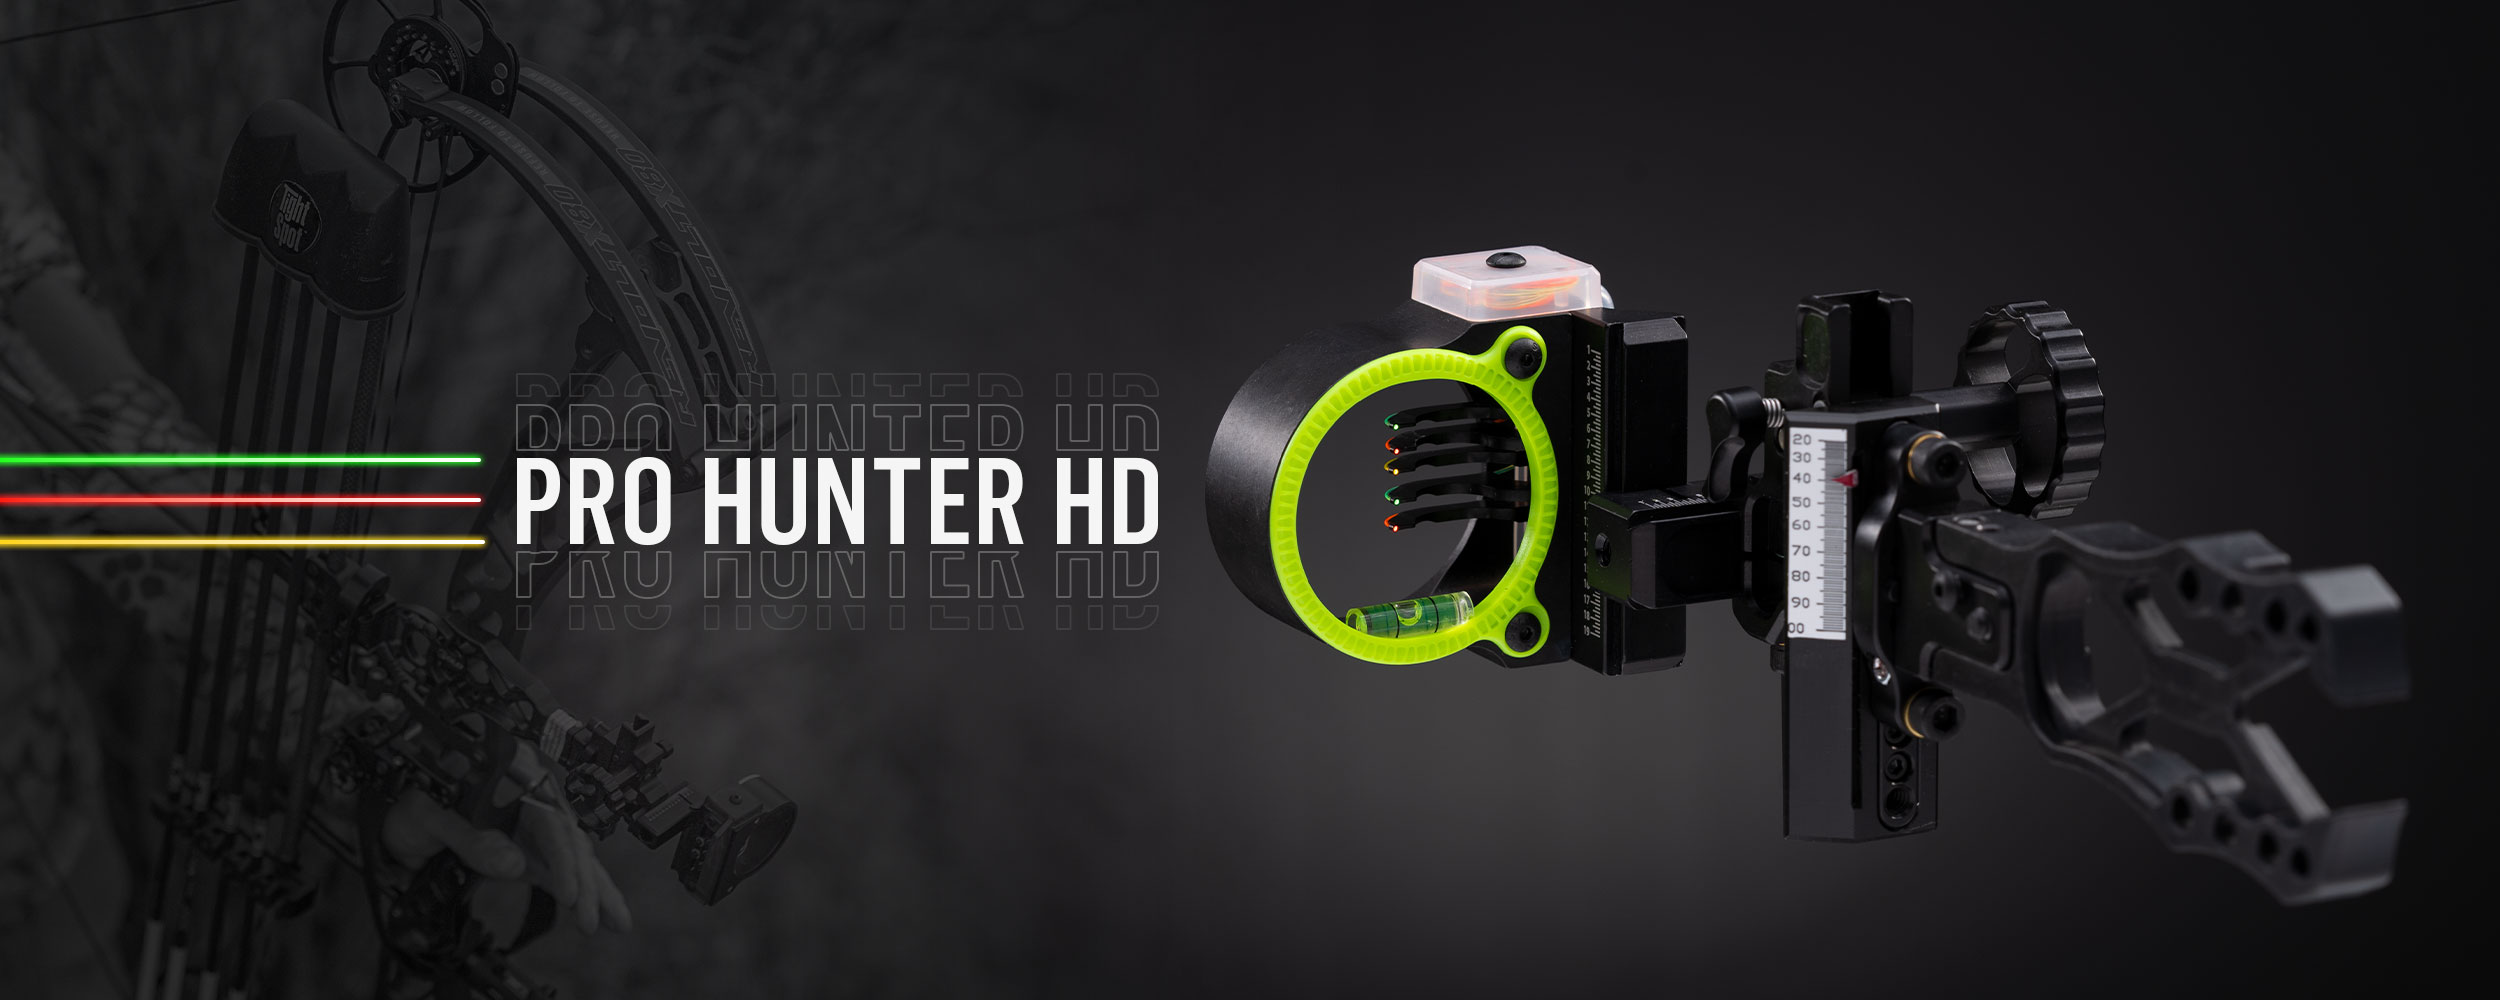 Pro Hunter HD header image